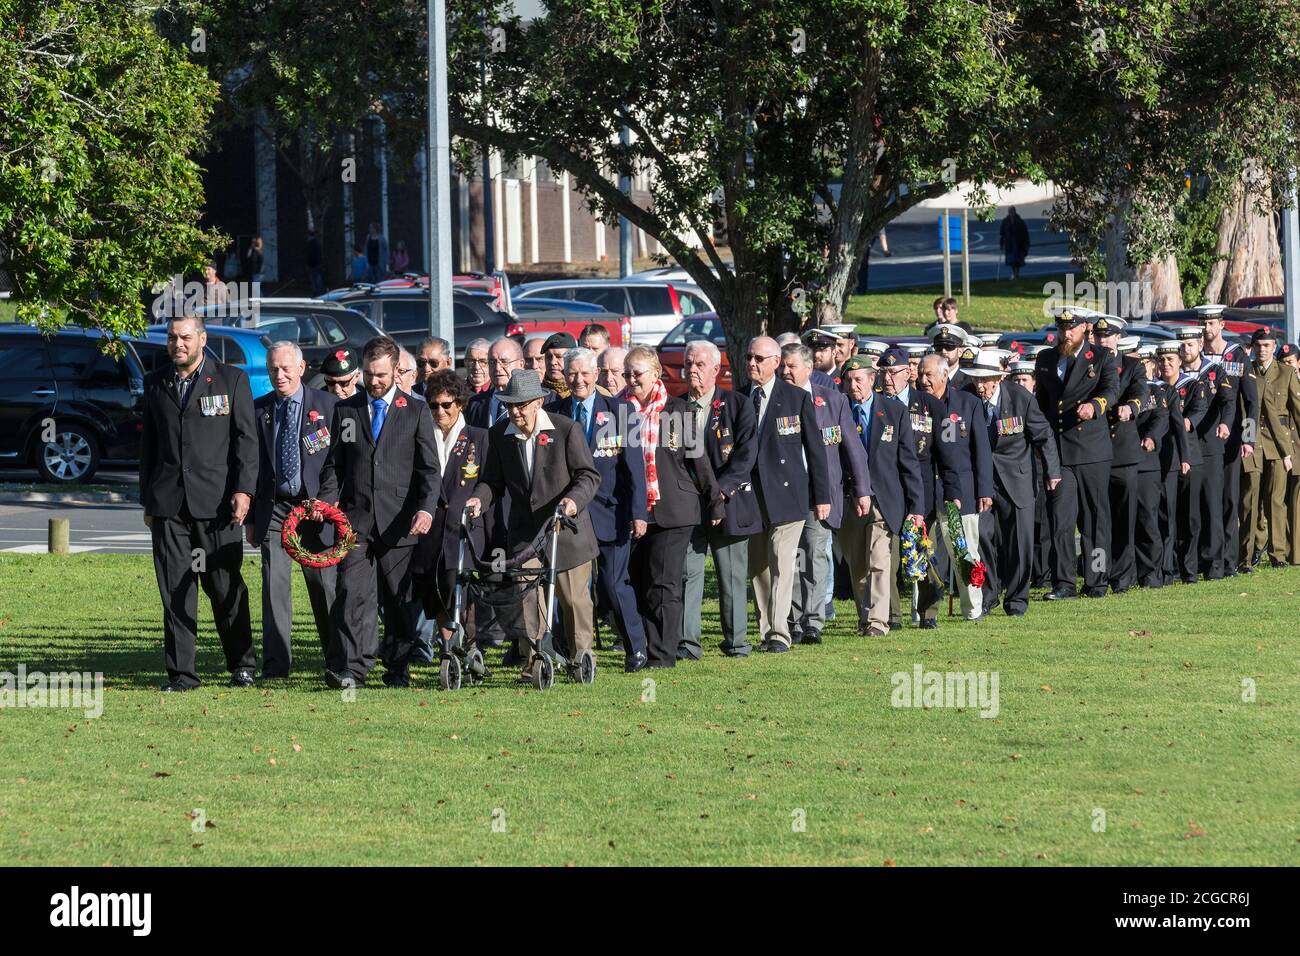 Des membres des forces armées néo-zélandaises, actuels et anciens, défilent le jour de l'Anzac. Tauranga, Nouvelle-Zélande, avril 25 2018 Banque D'Images